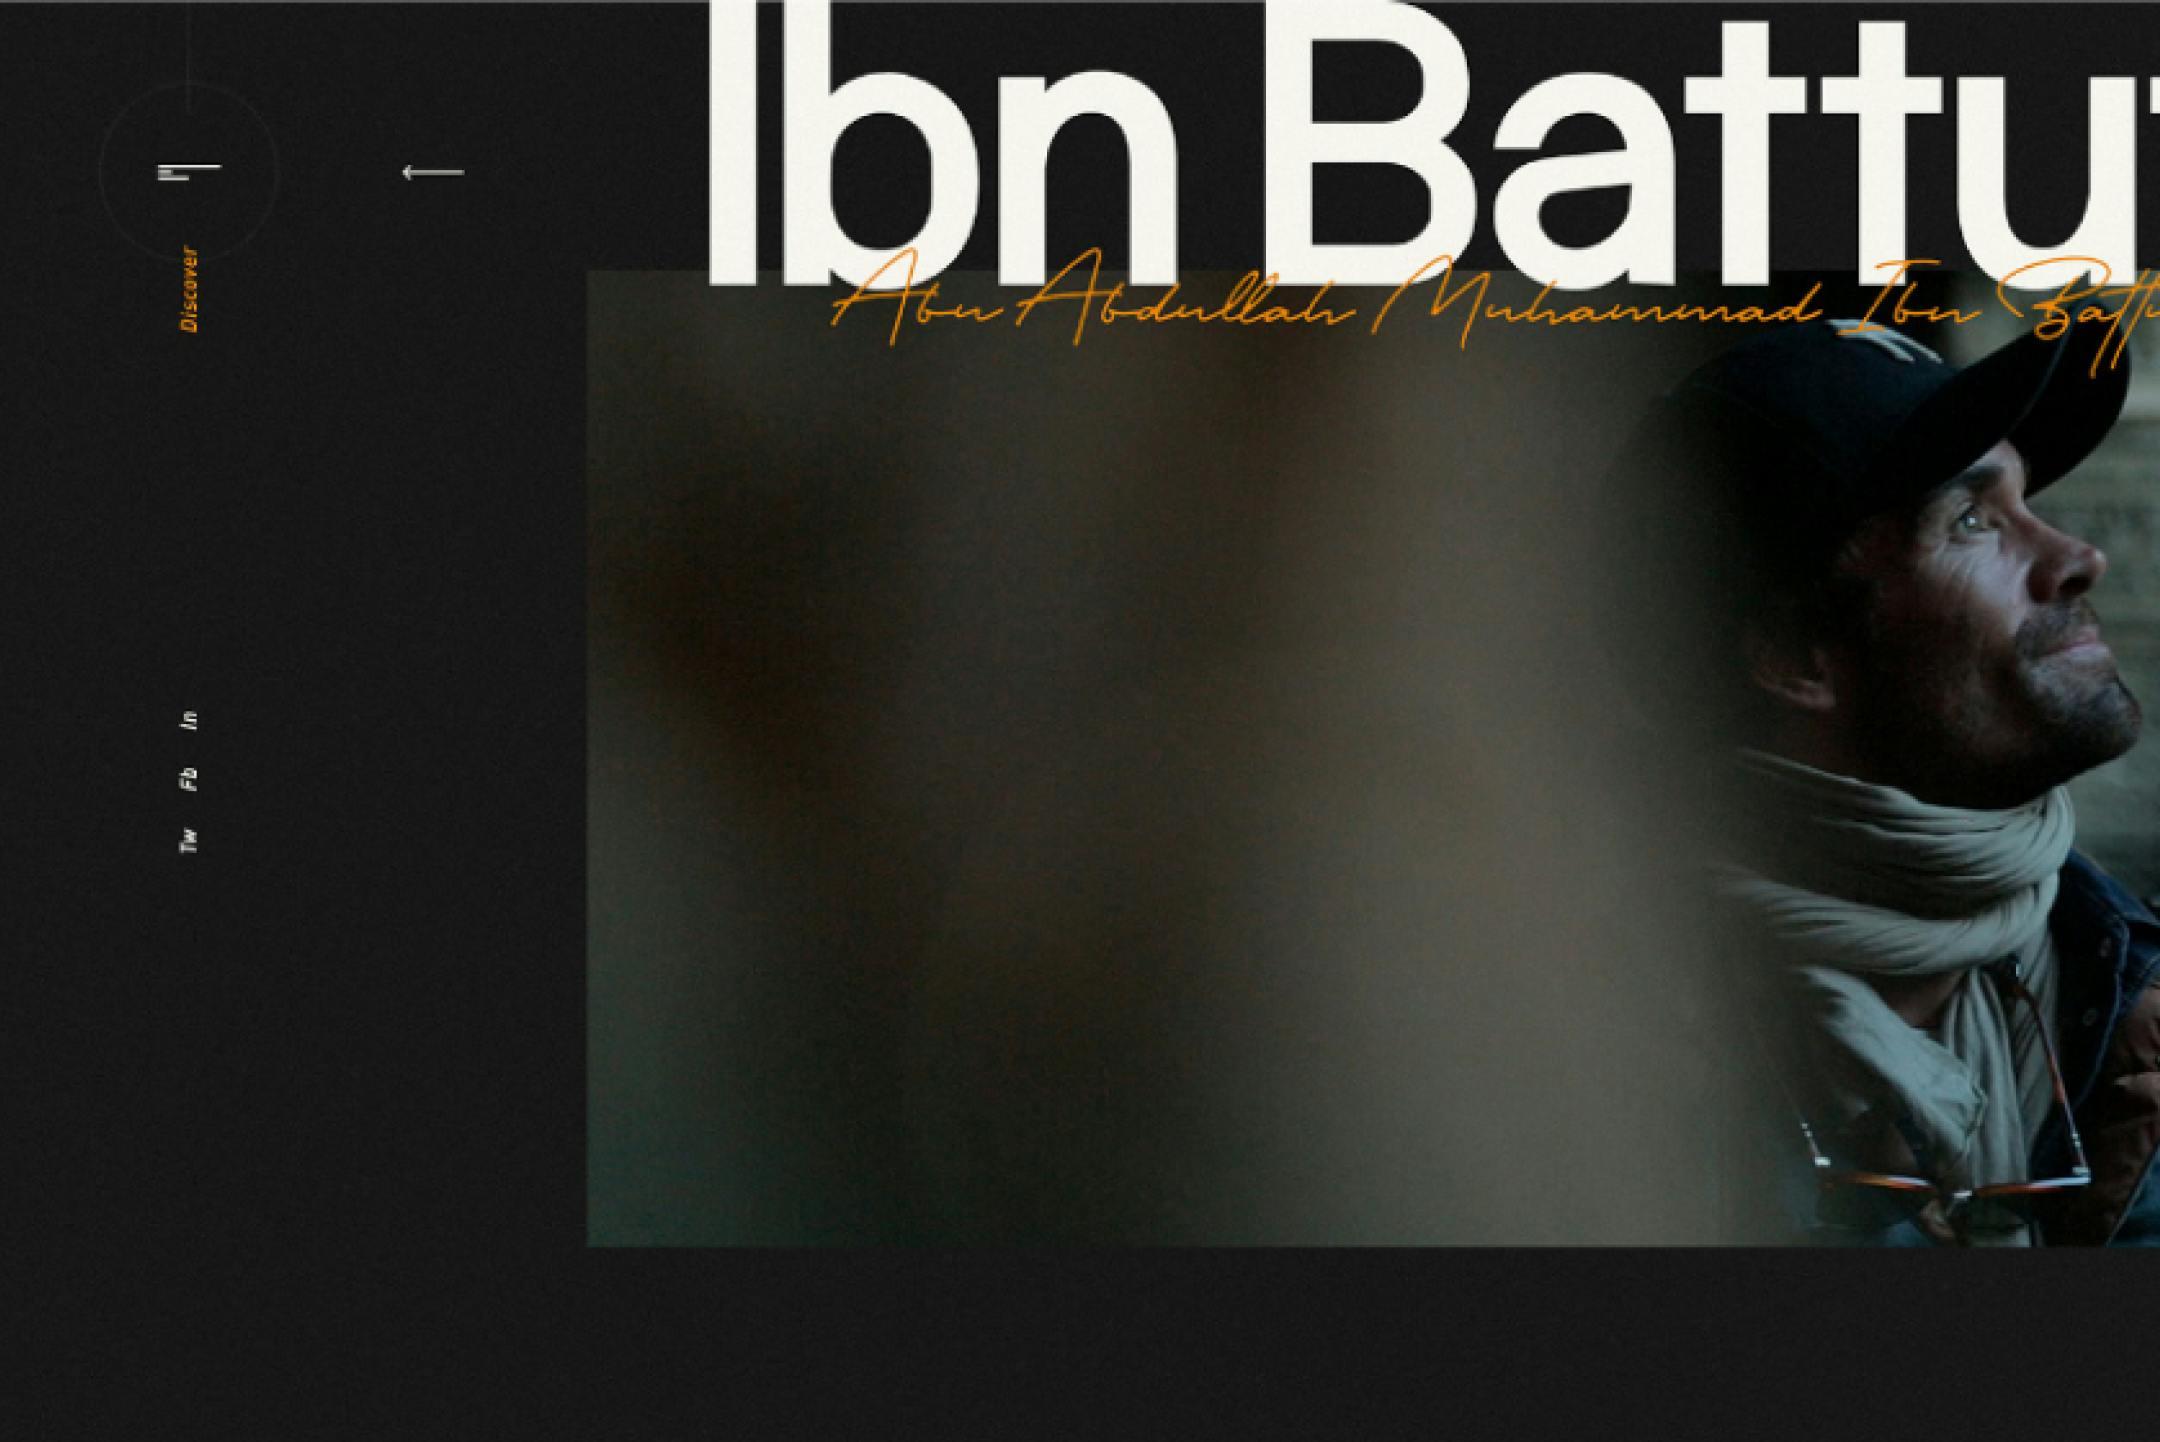 Extract of the website : Ibn Battu